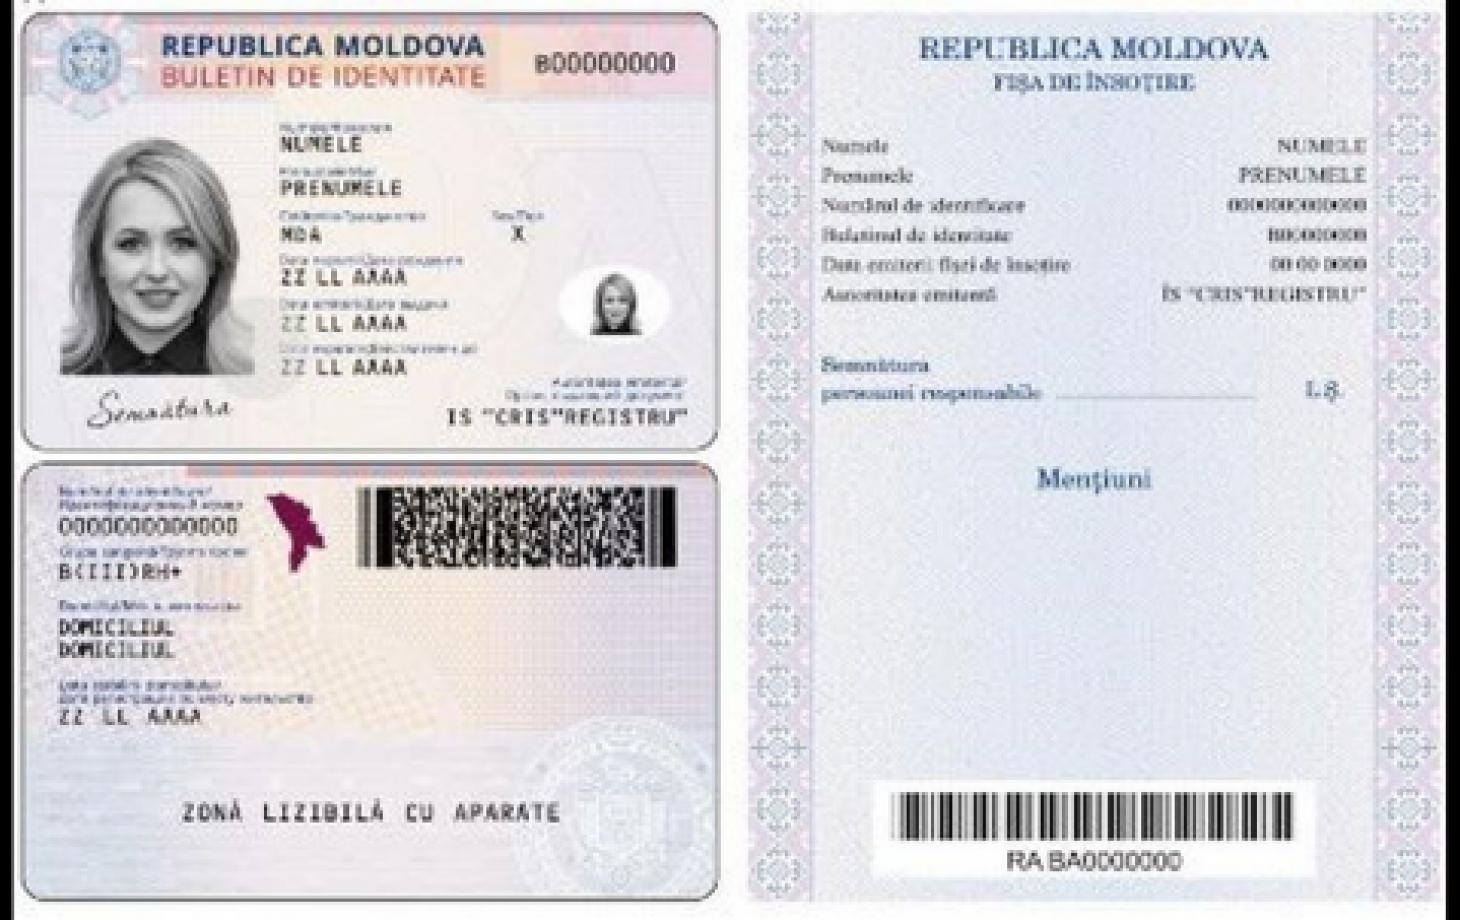 Удостоверение личности гражданина Республики Молдова